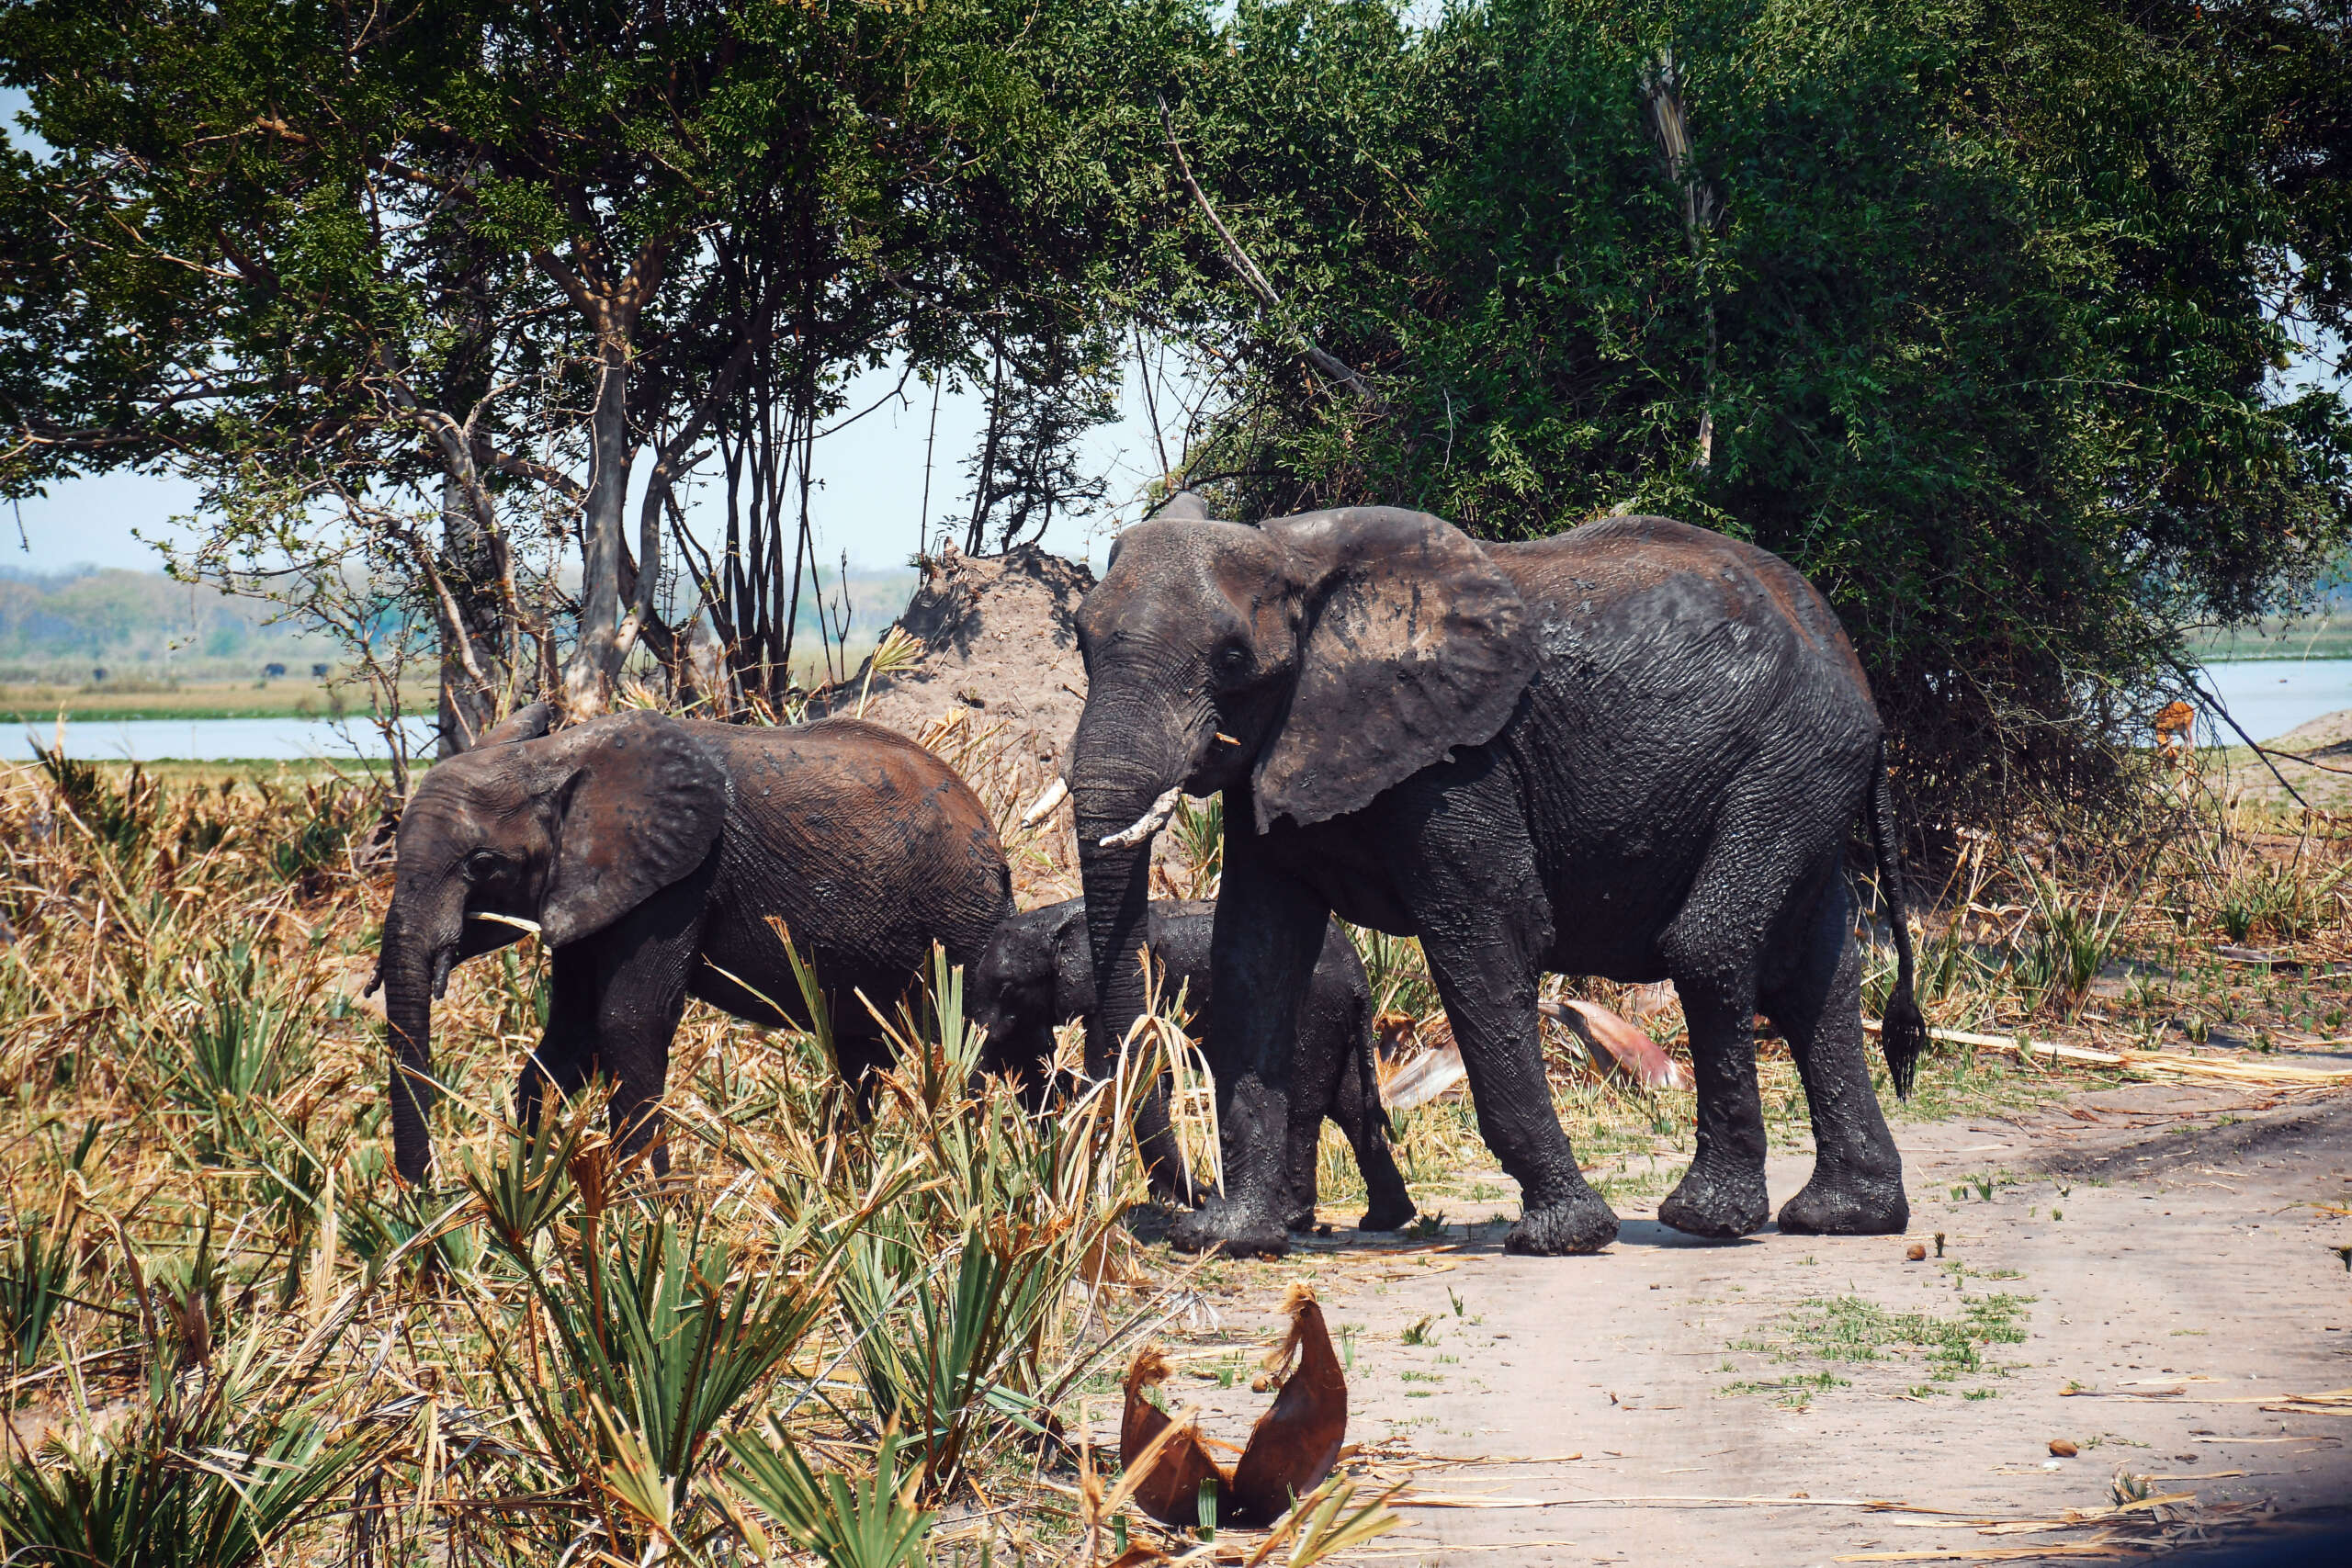 https://visitmalawi.mw/wp-content/uploads/2022/01/Liwonde-National-Park-elephants-2-scaled.jpg